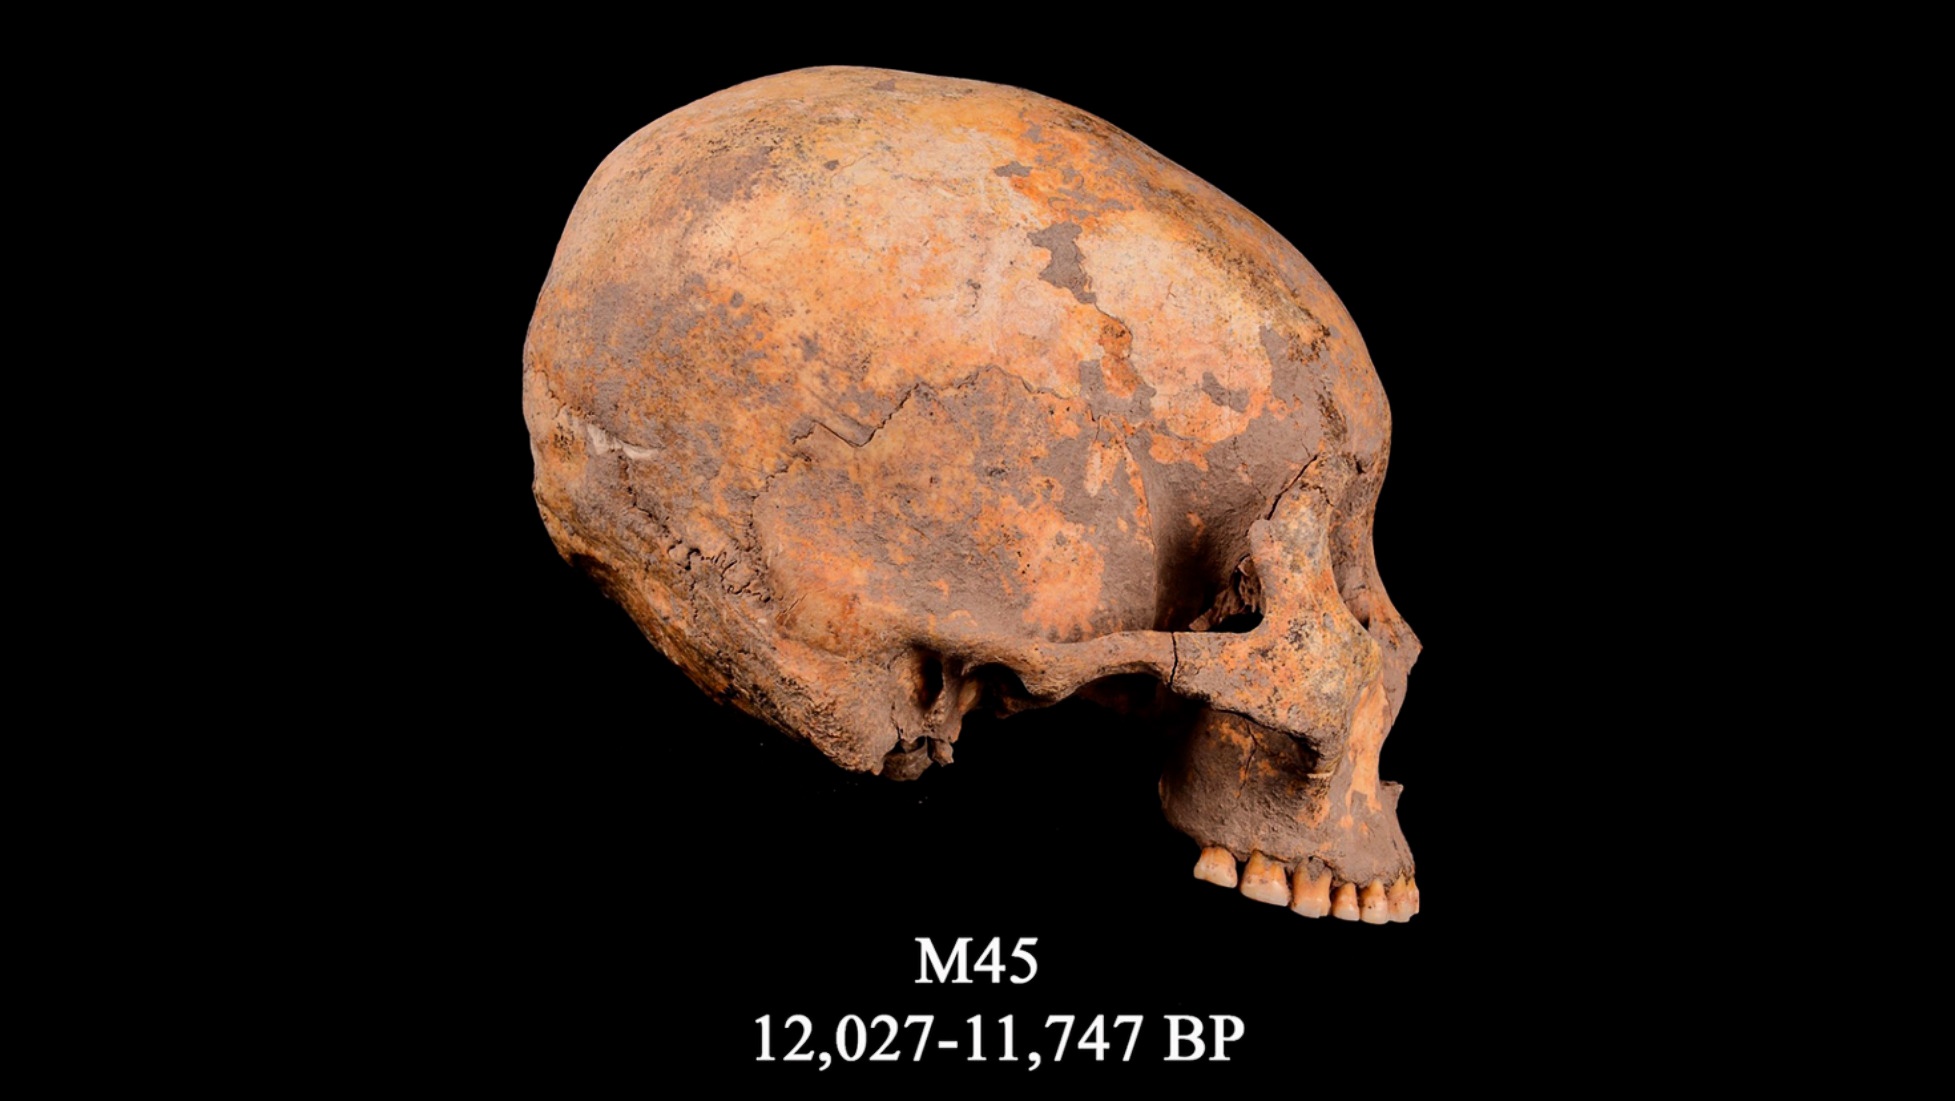 De Schädel bekannt als M45, de fréiste bekannte Fall vu Kappmodifikatioun op Rekord. Et staamt virun ongeféier 12,000 Joer.